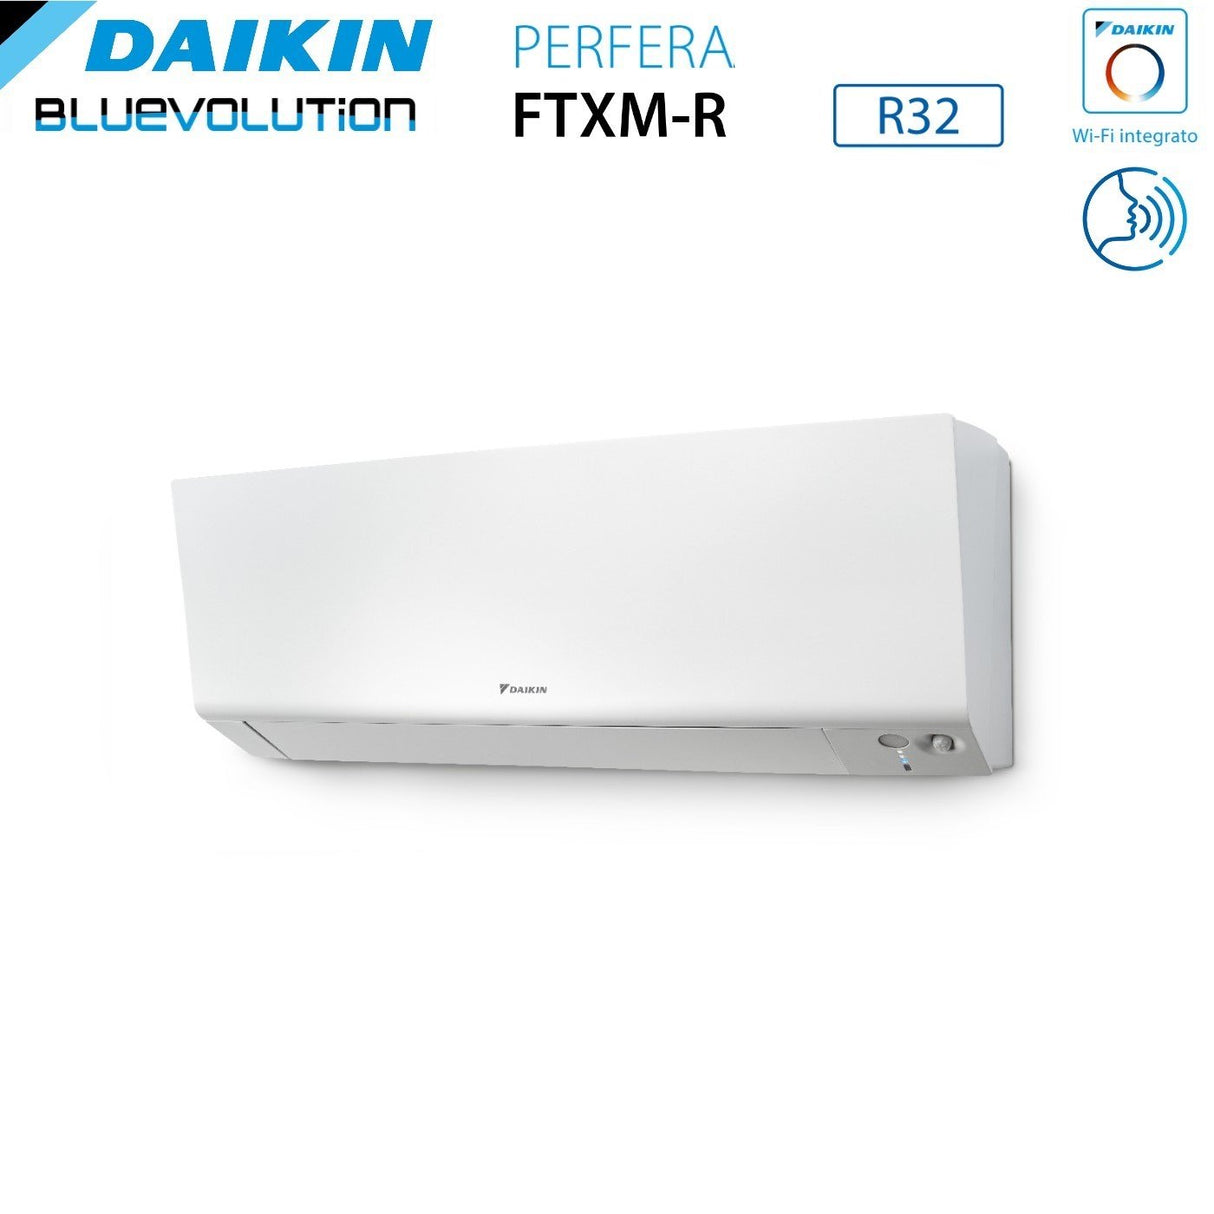 immagine-5-daikin-climatizzatore-condizionatore-daikin-bluevolution-quadri-split-inverter-serie-ftxmr-perfera-wall-79918-con-4mxm80a-r-32-wi-fi-integrato-70009000900018000-garanzia-italiana